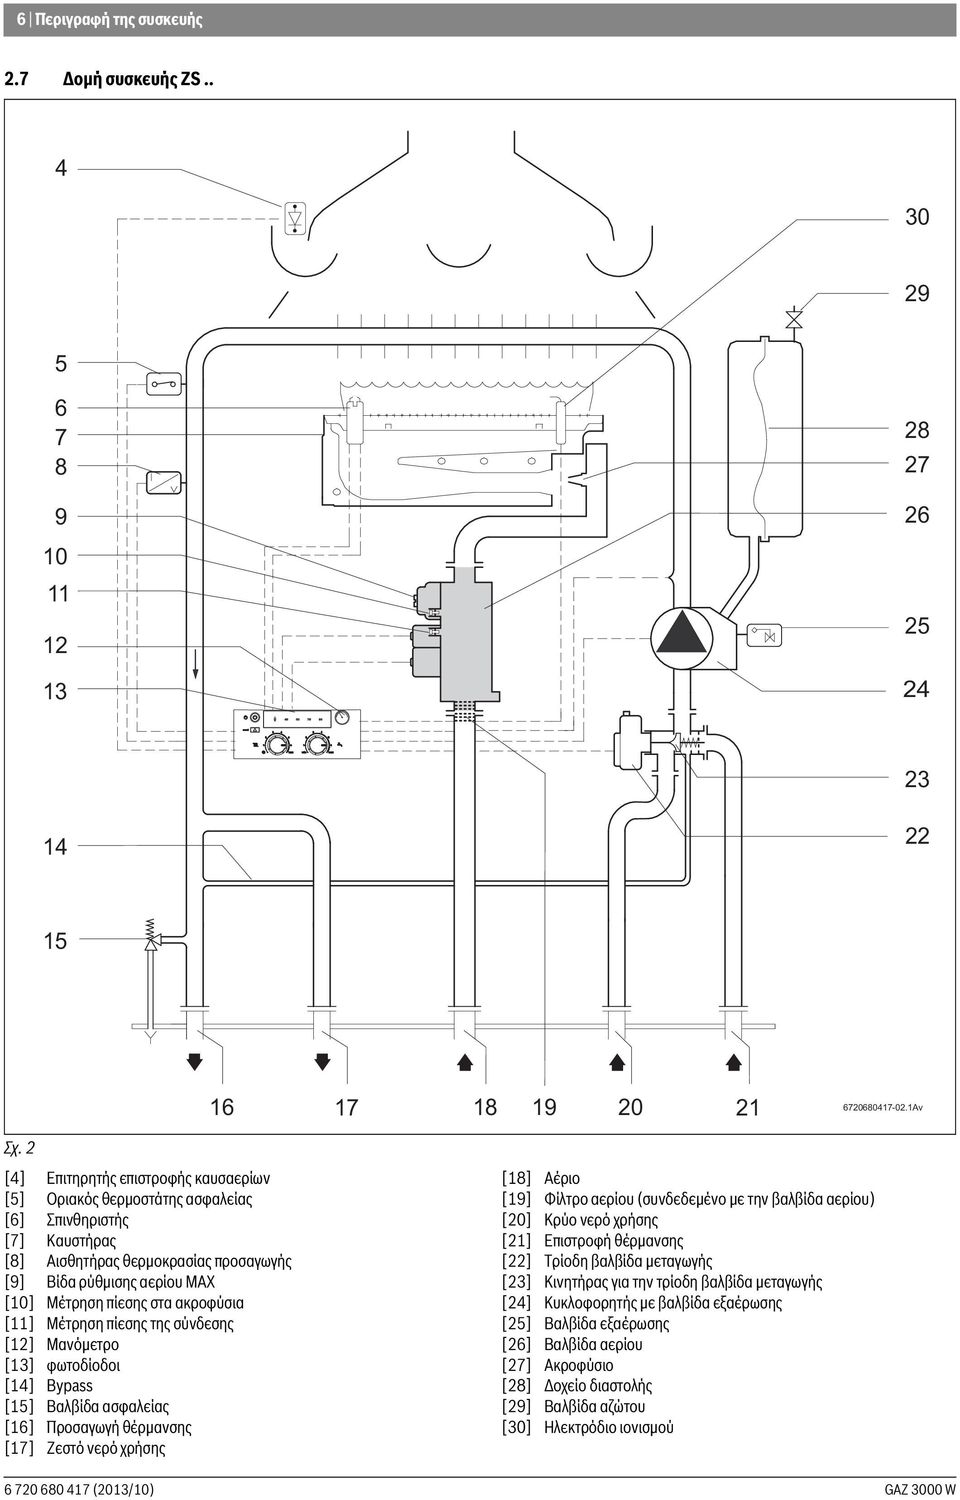 ακροφύσια [11] Μέτρηση πίεσης της σύνδεσης [12] Μανόμετρο [13] φωτοδίοδοι [14] Bypass [15] Βαλβίδα ασφαλείας [16] Προσαγωγή θέρμανσης [17] Ζεστό νερό χρήσης [18] Αέριο [19] Φίλτρο αερίου (συνδεδεμένο